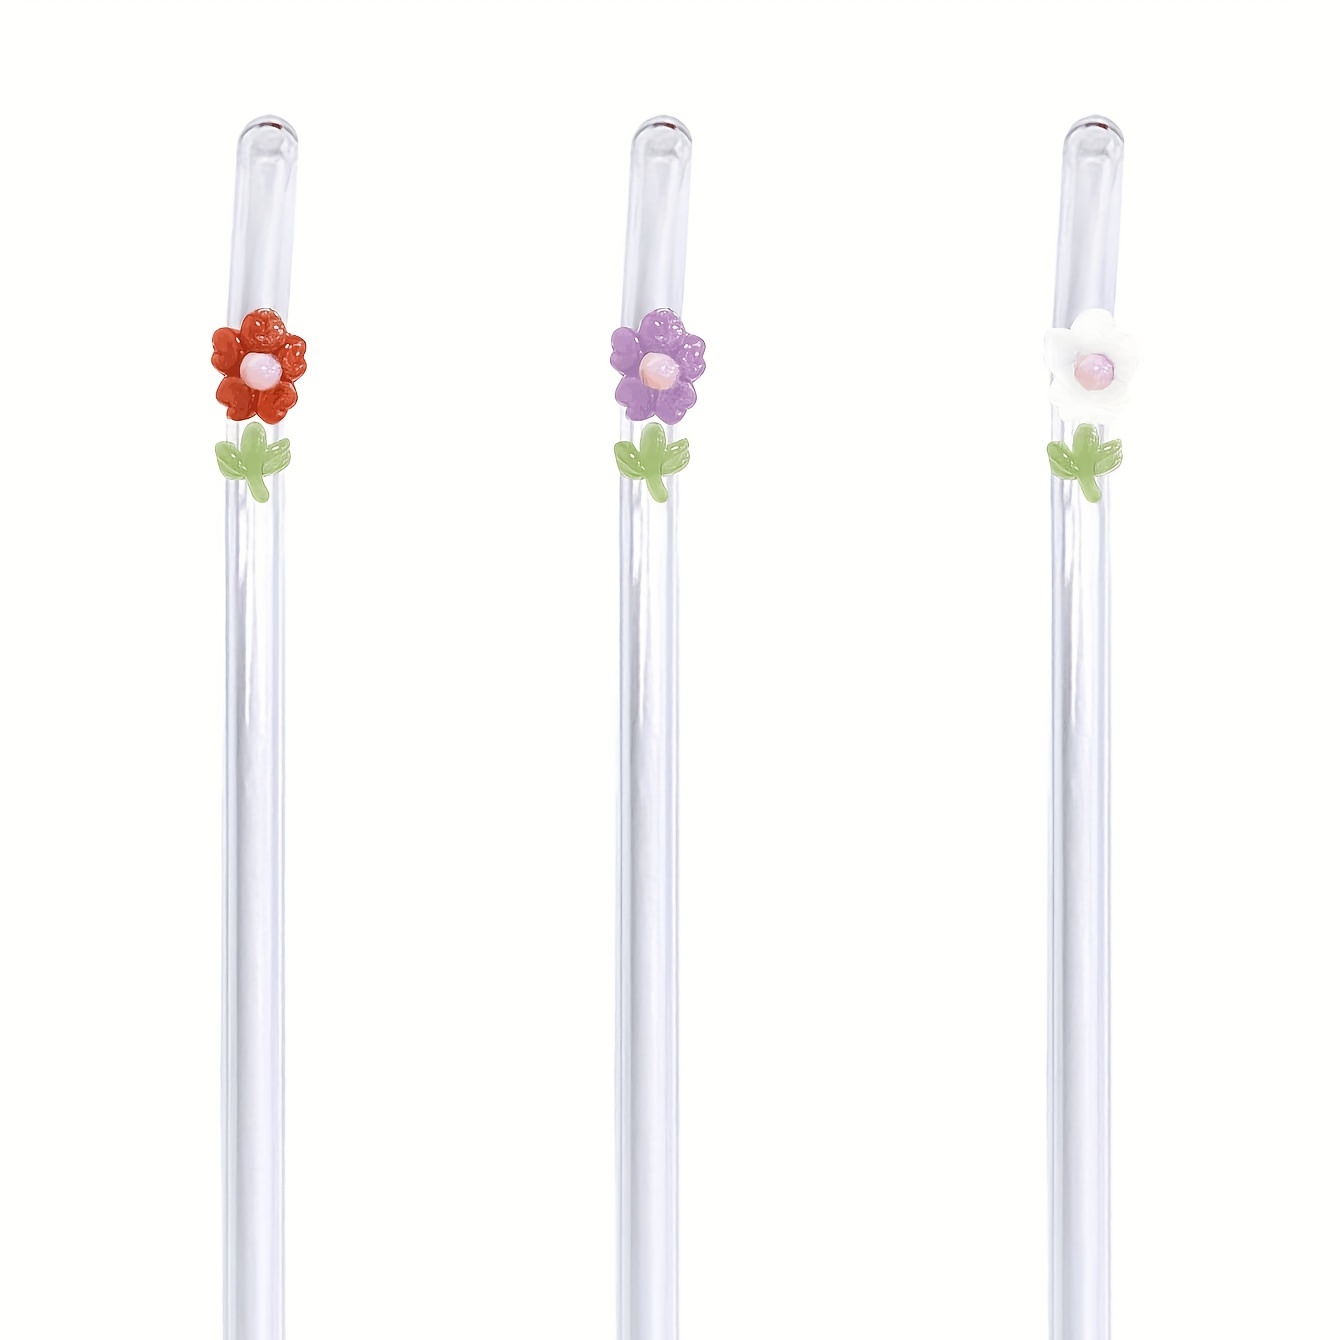 Flower GLASS STRAW Boba Straws Smoothie Straws Thin Straws Reusable Straws  Eco Friendly Straw Glass Straws Flower Straws 